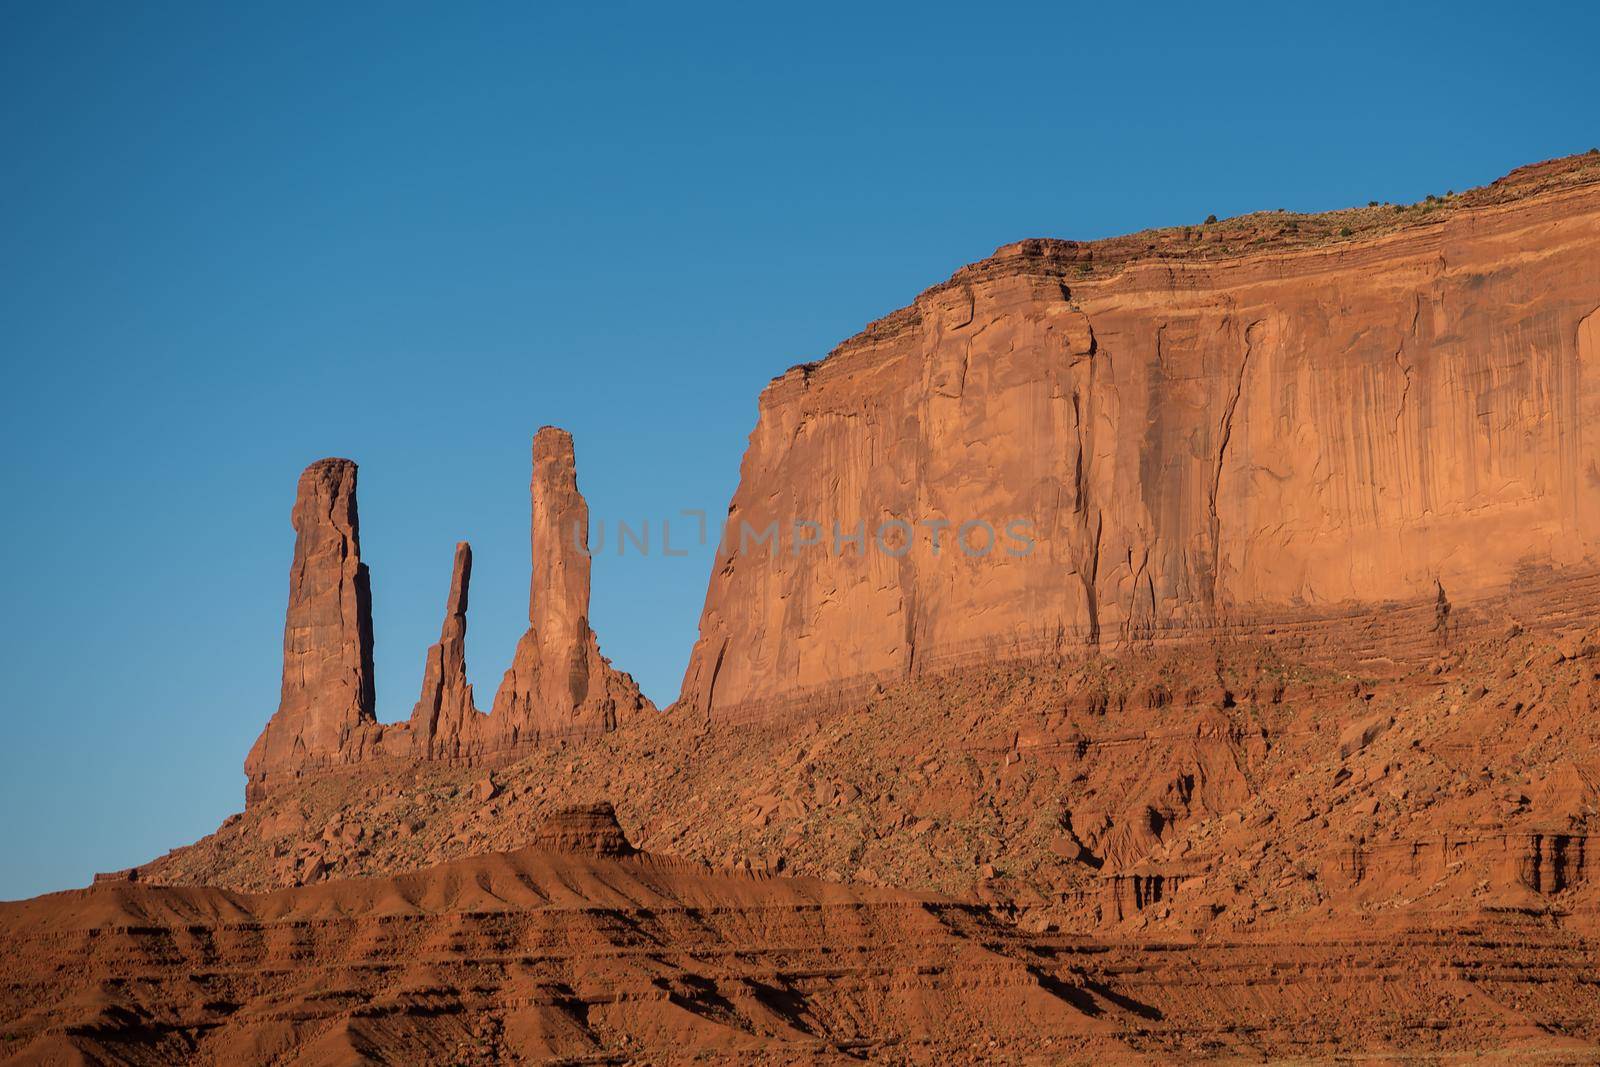 W-shape butte carved by erosion near mesa Utah by jyurinko